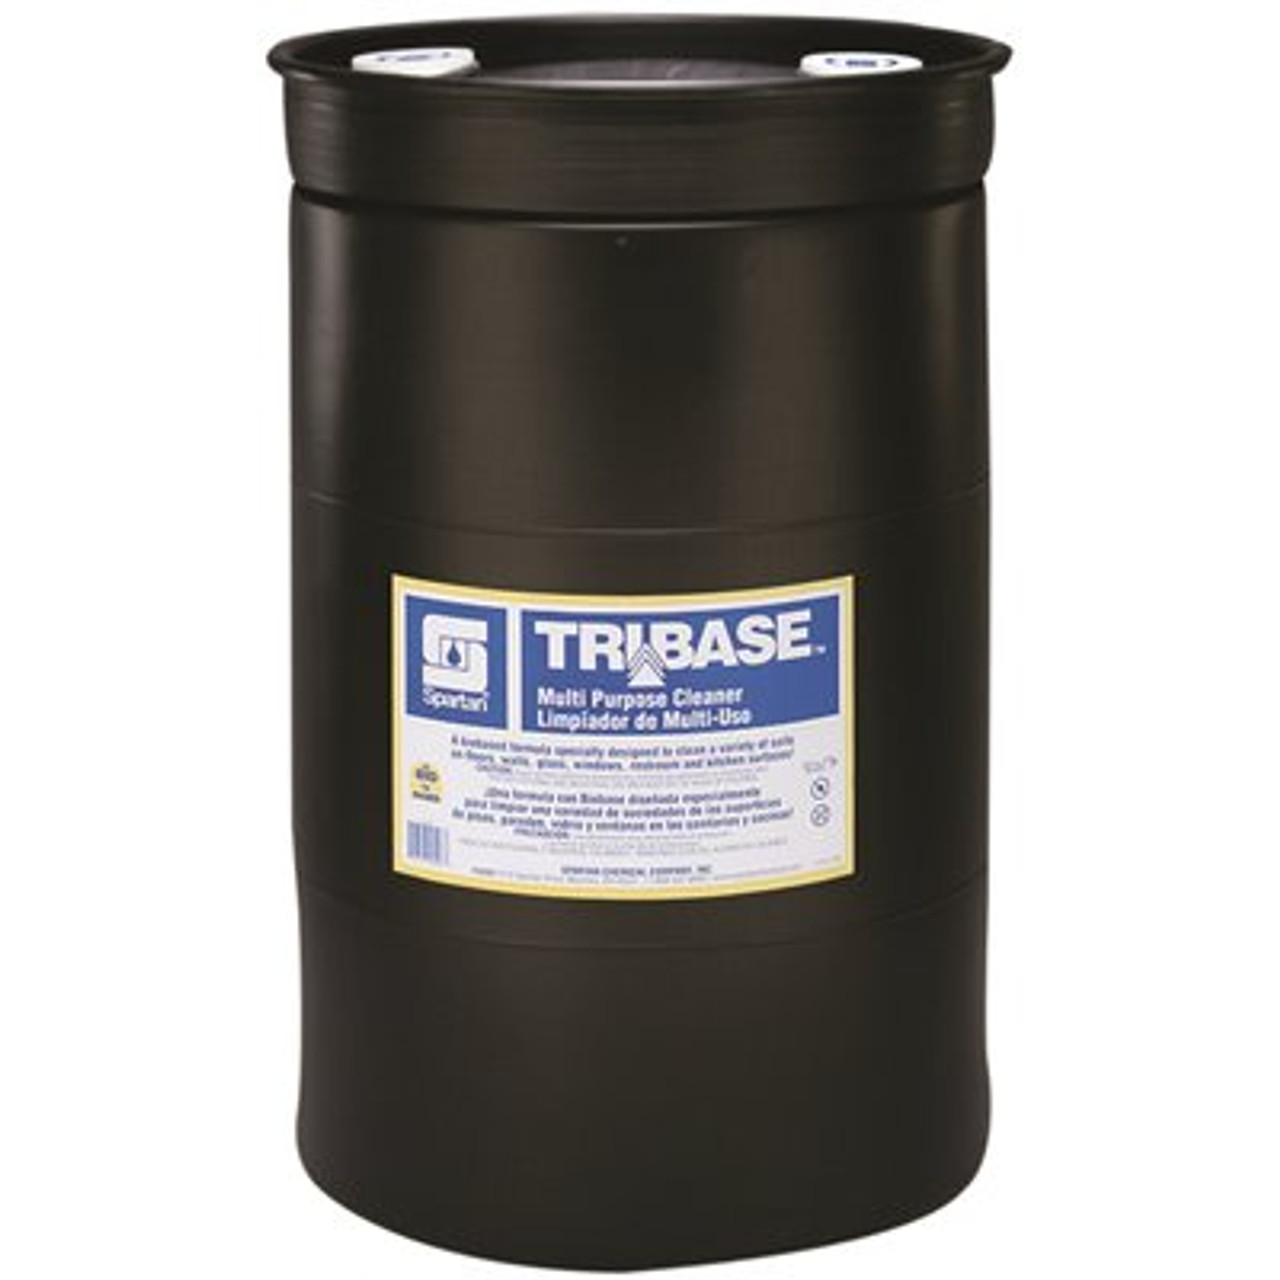 Spartan Chemical Company Tribase 30 Gallon Citrus Scent Multi Purpose Cleaner